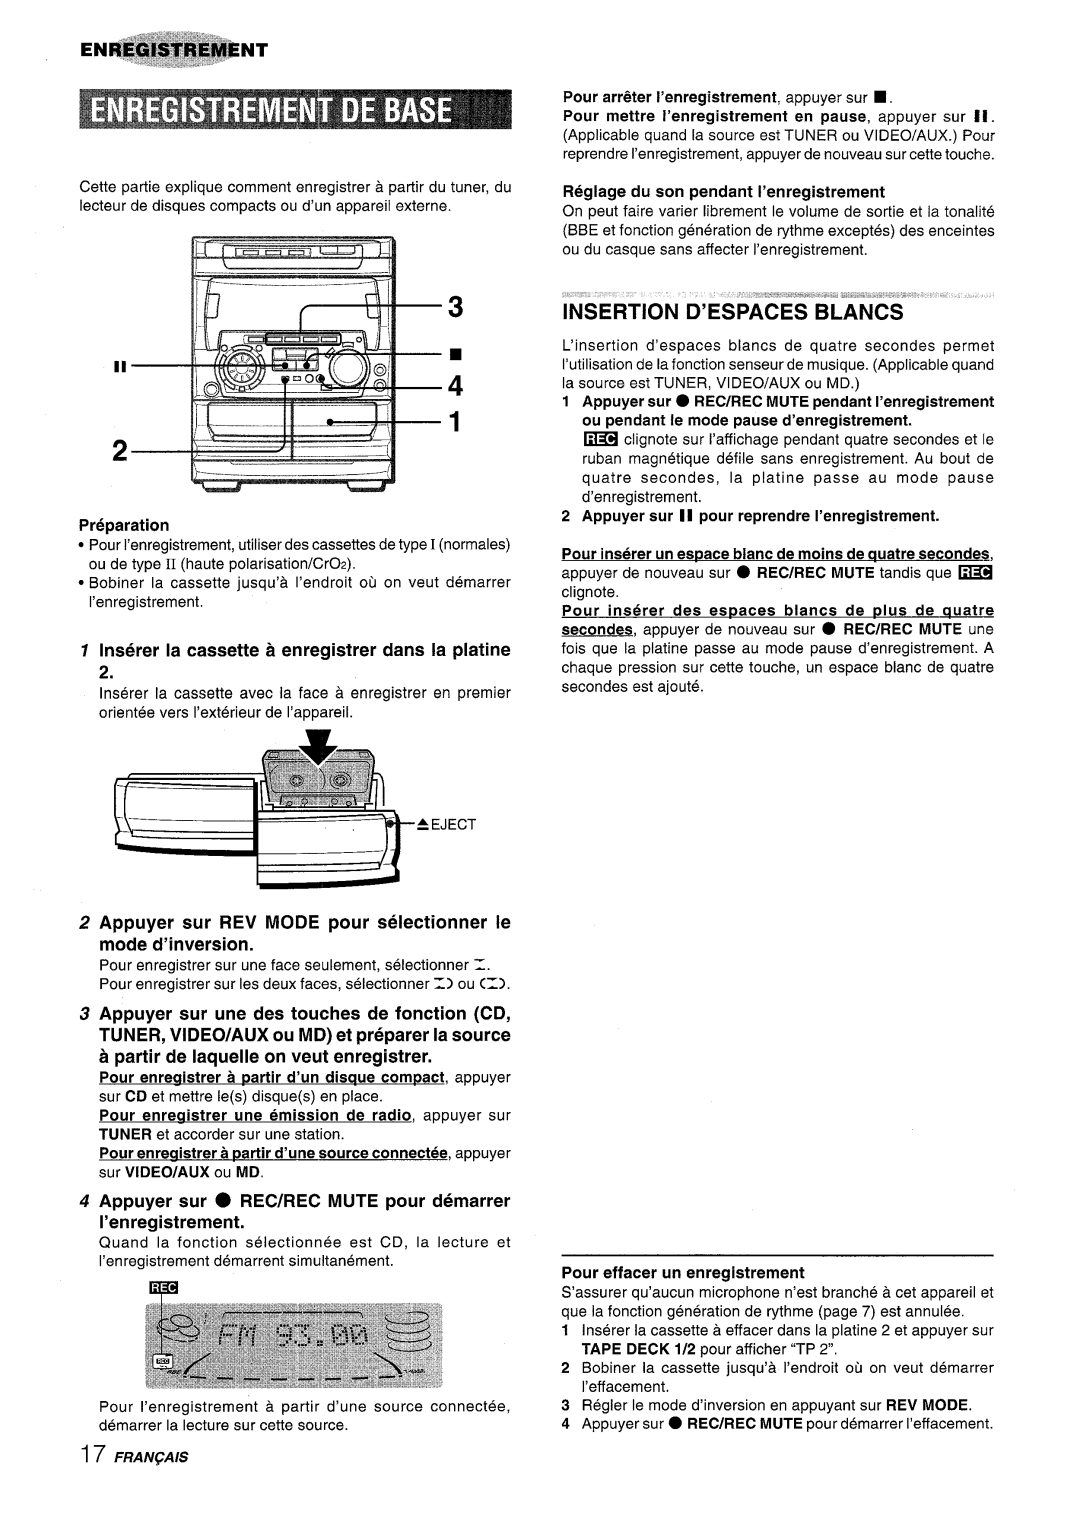 Sony NSX-A707 manual Insertion D’Espaces Blancs, Preparation, Inserer la cassette a enregistrer clans la platine 